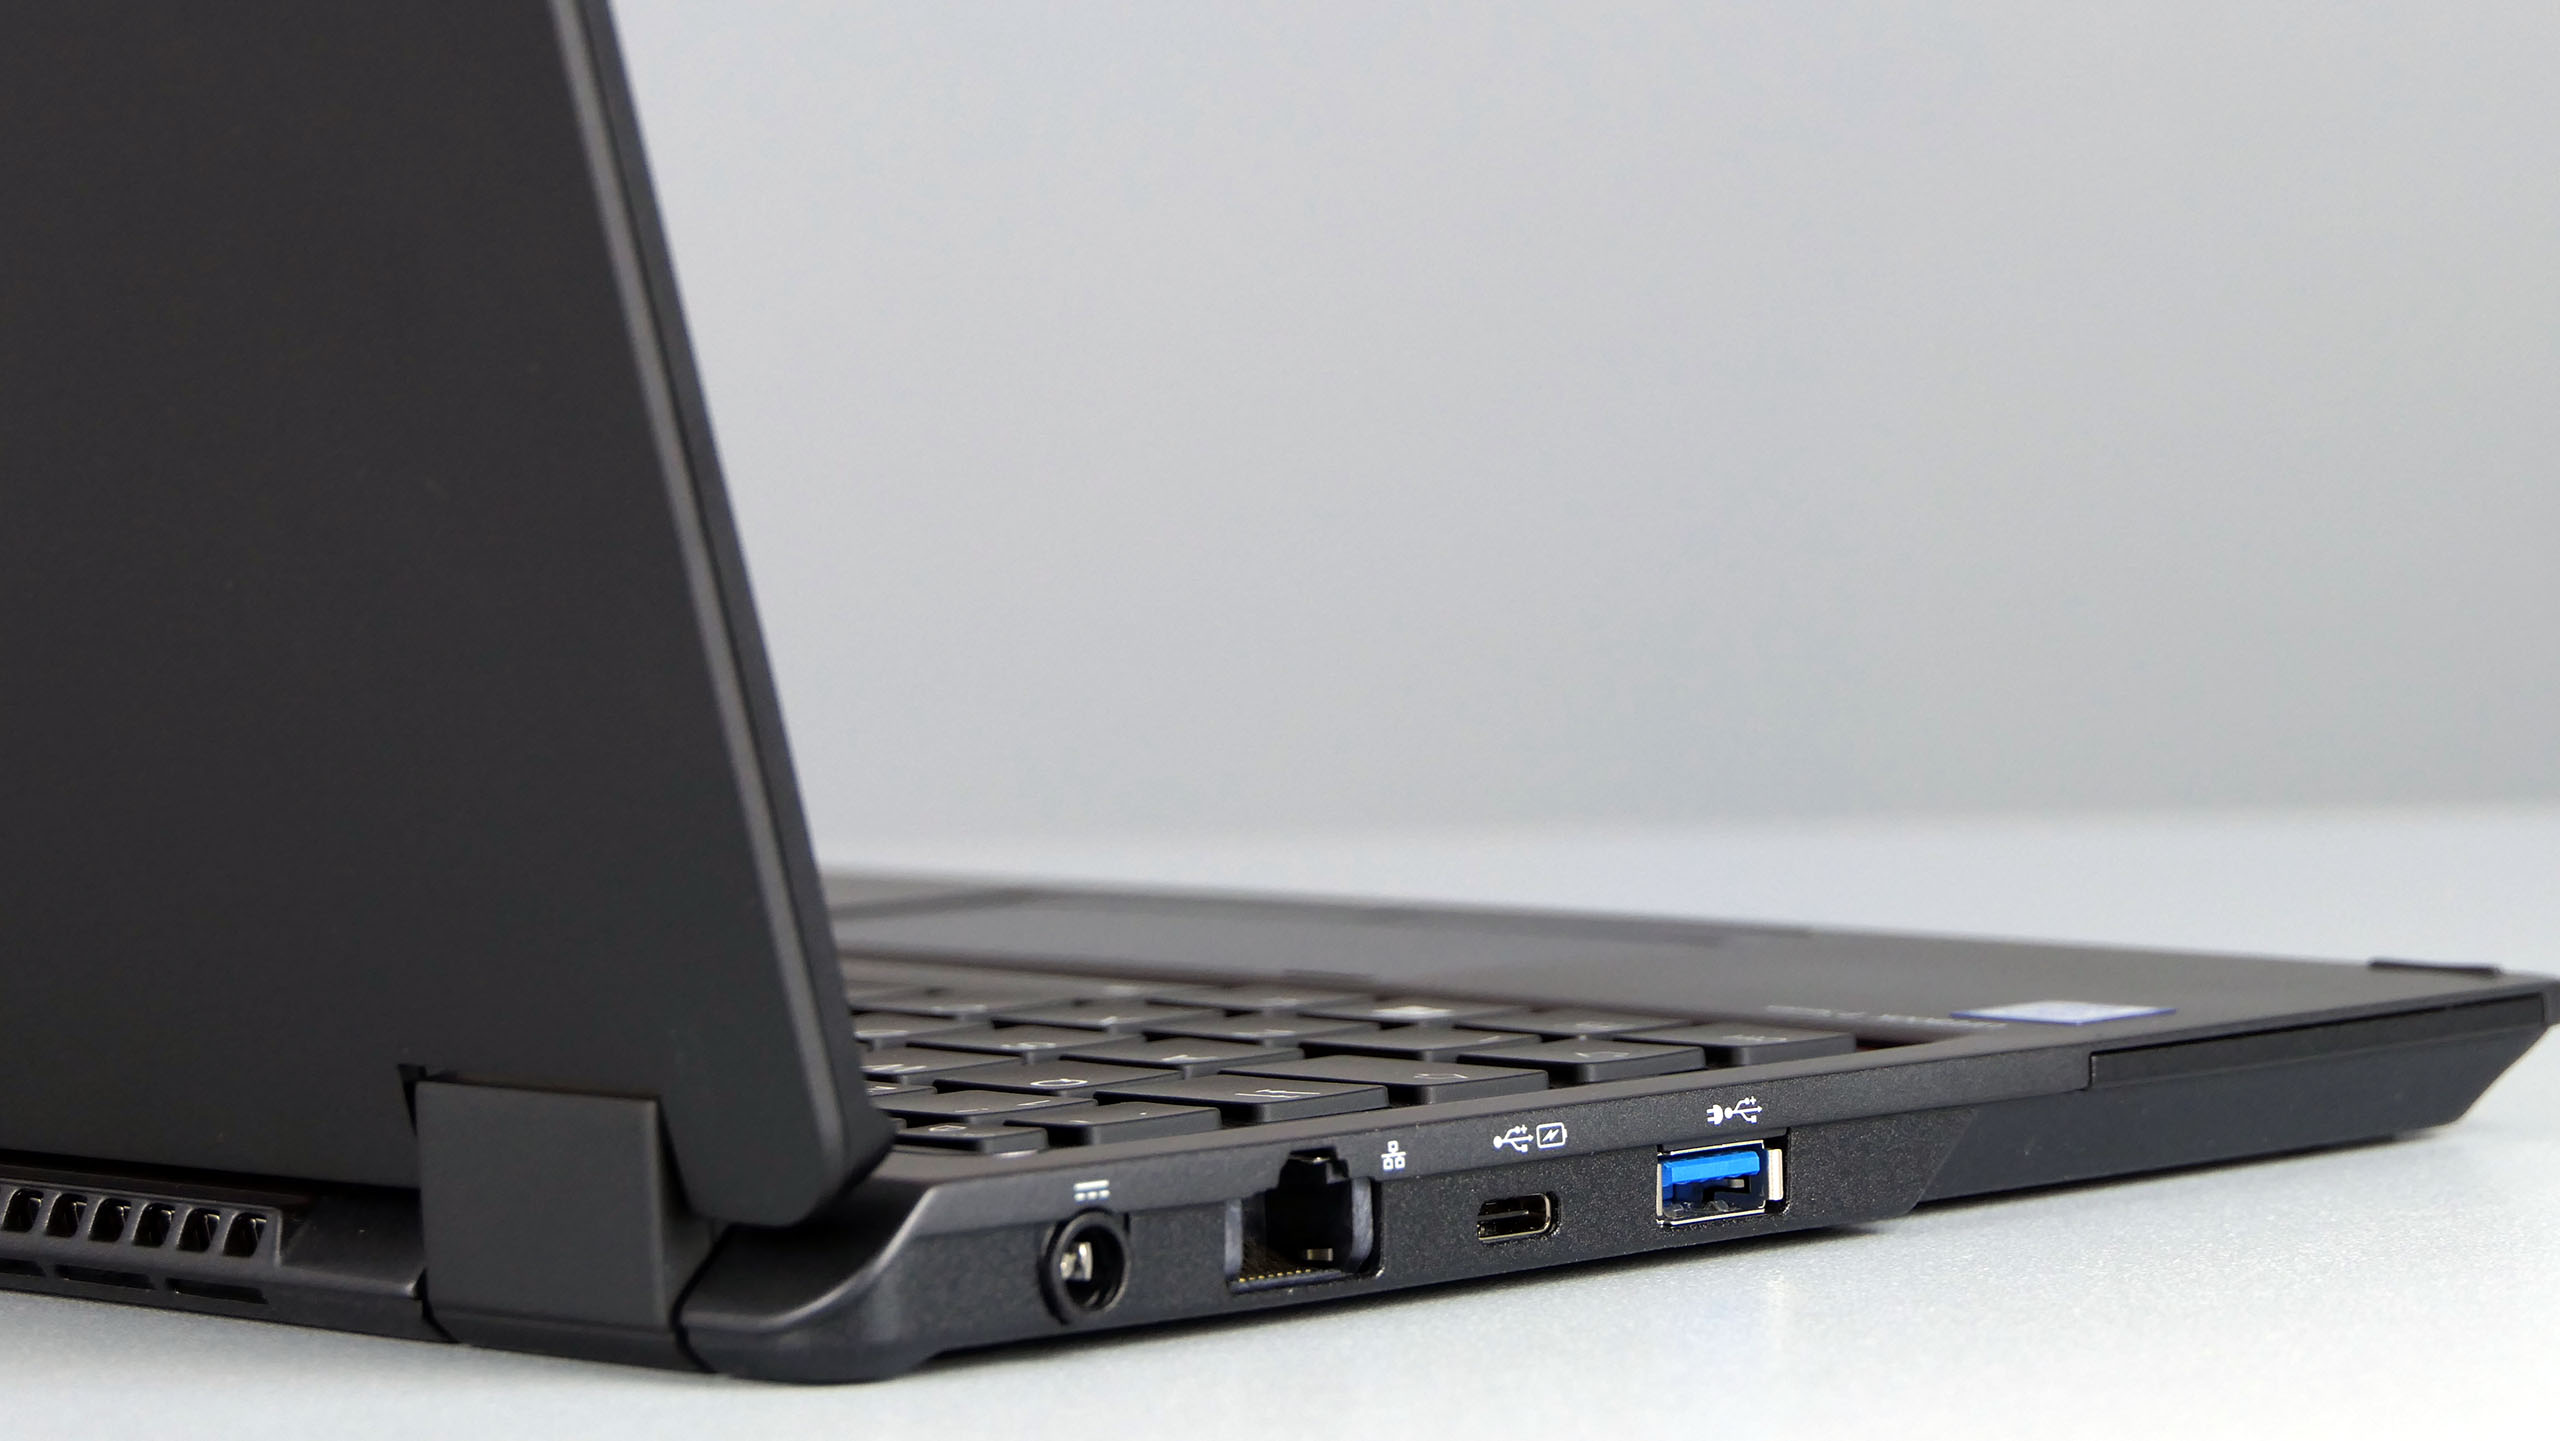 Fujitsu LifeBook P728 - porty na lewym boku: zasilanie, RJ-45, USB typu C, USB 3.0